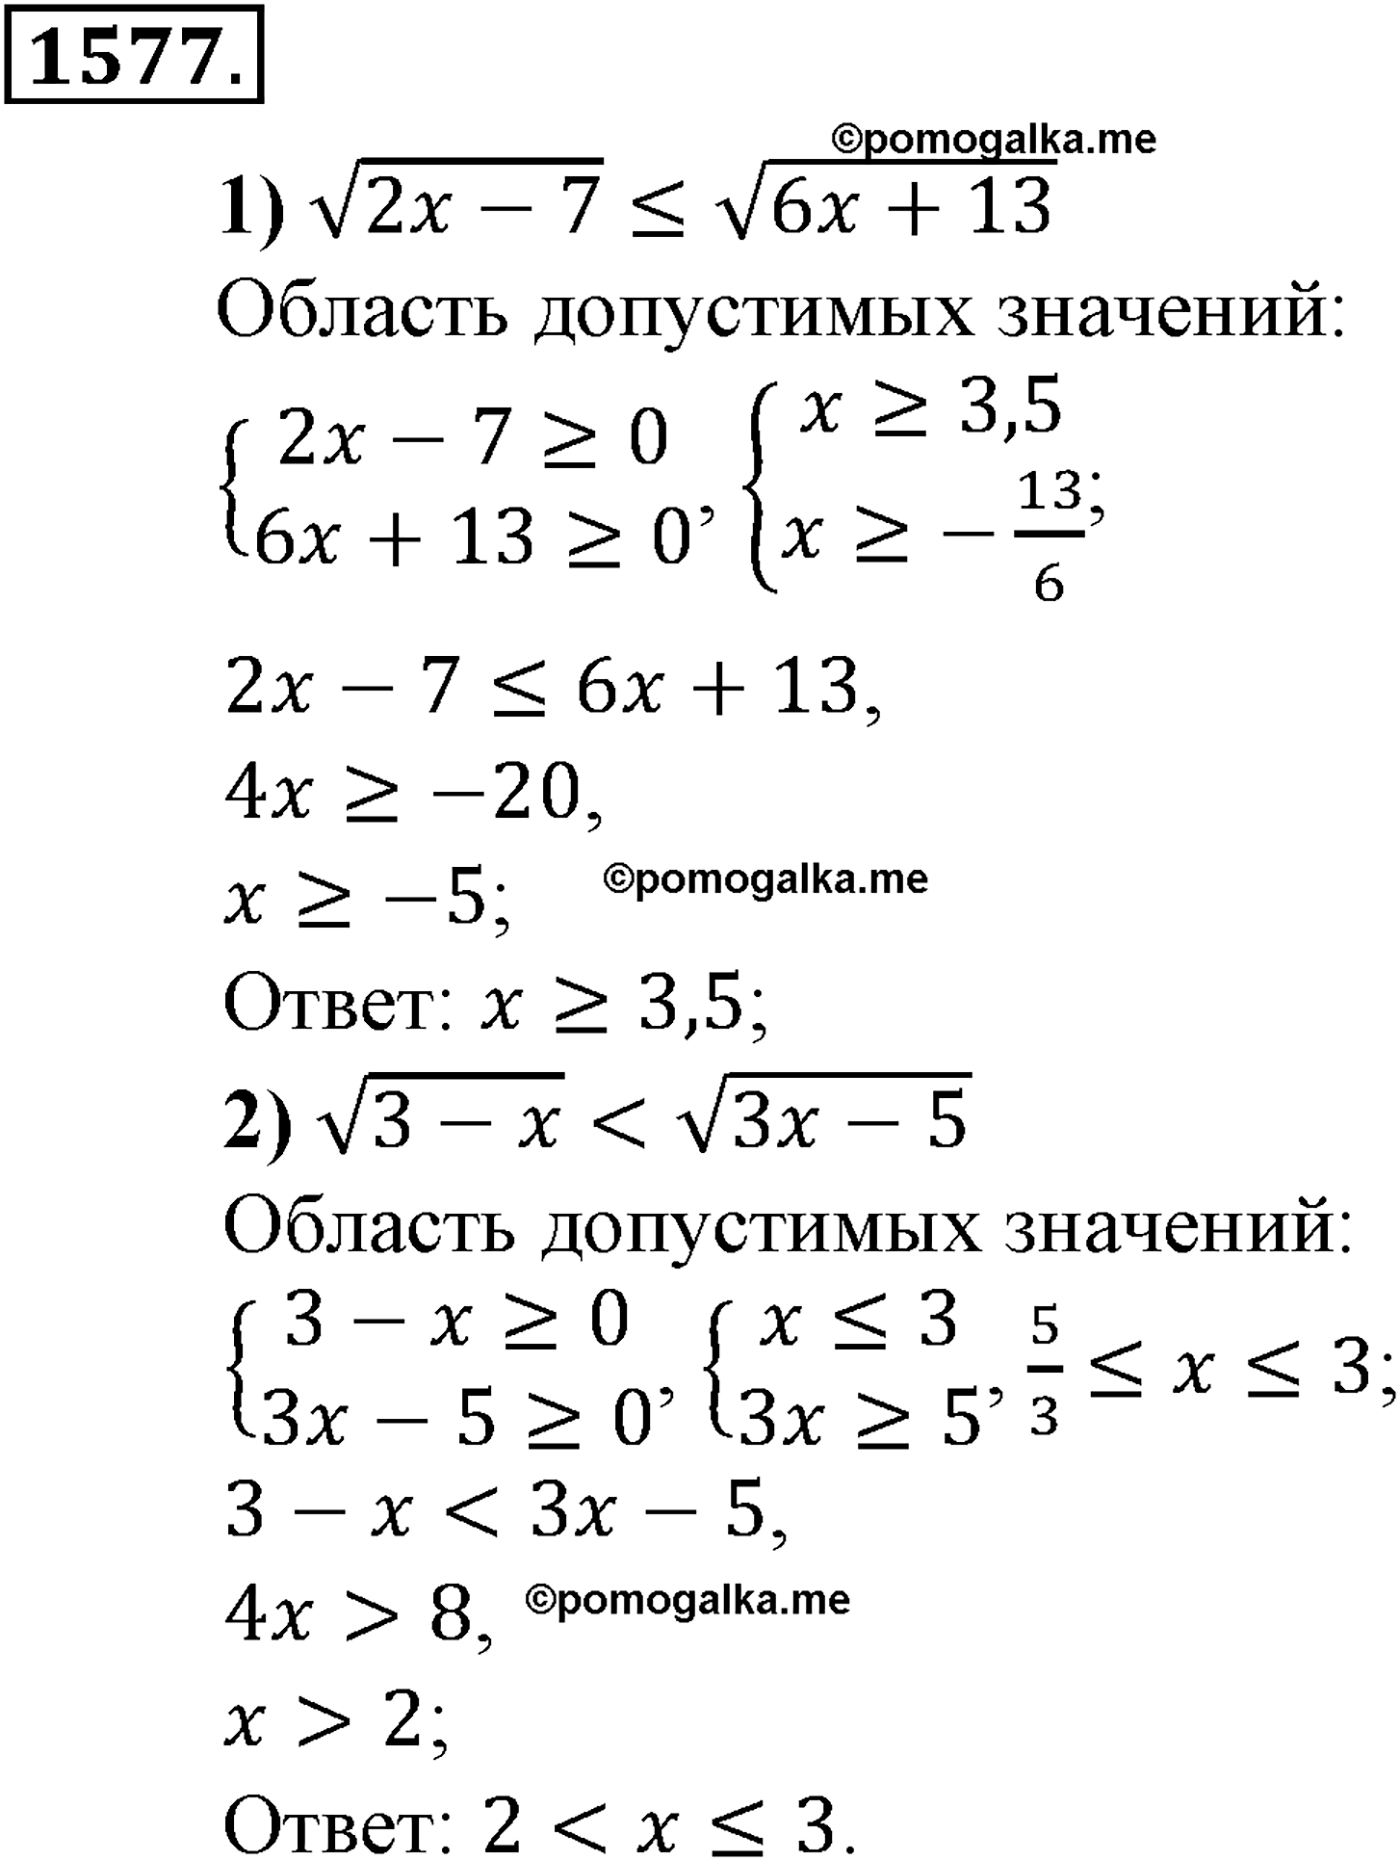 разбор задачи №1577 по алгебре за 10-11 класс из учебника Алимова, Колягина